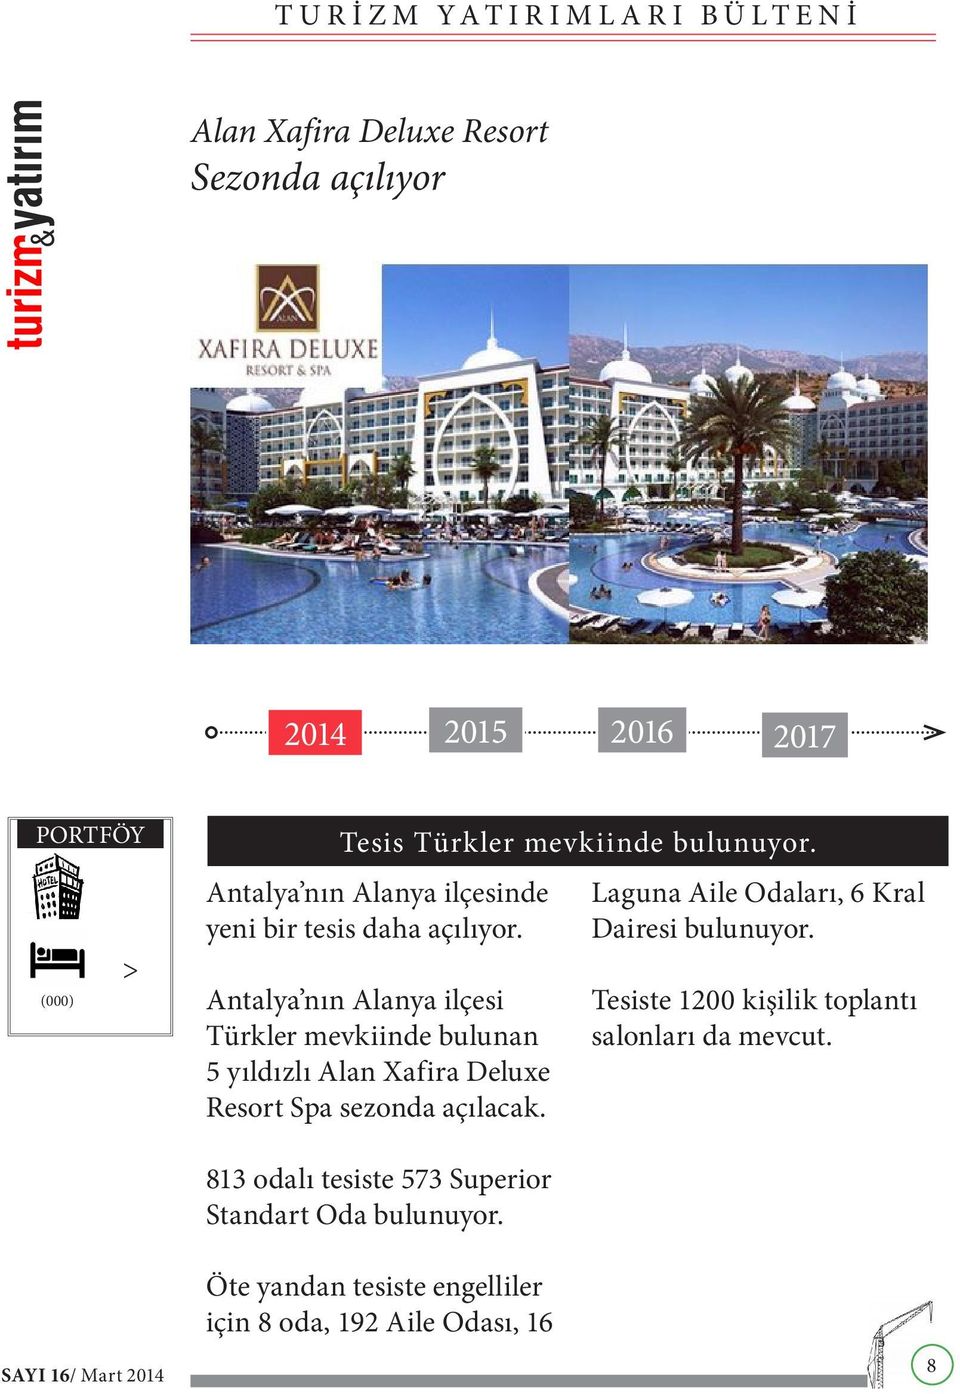 Antalya nın Alanya ilçesi Türkler mevkiinde bulunan 5 yıldızlı Alan Xafira Deluxe Resort Spa sezonda açılacak.